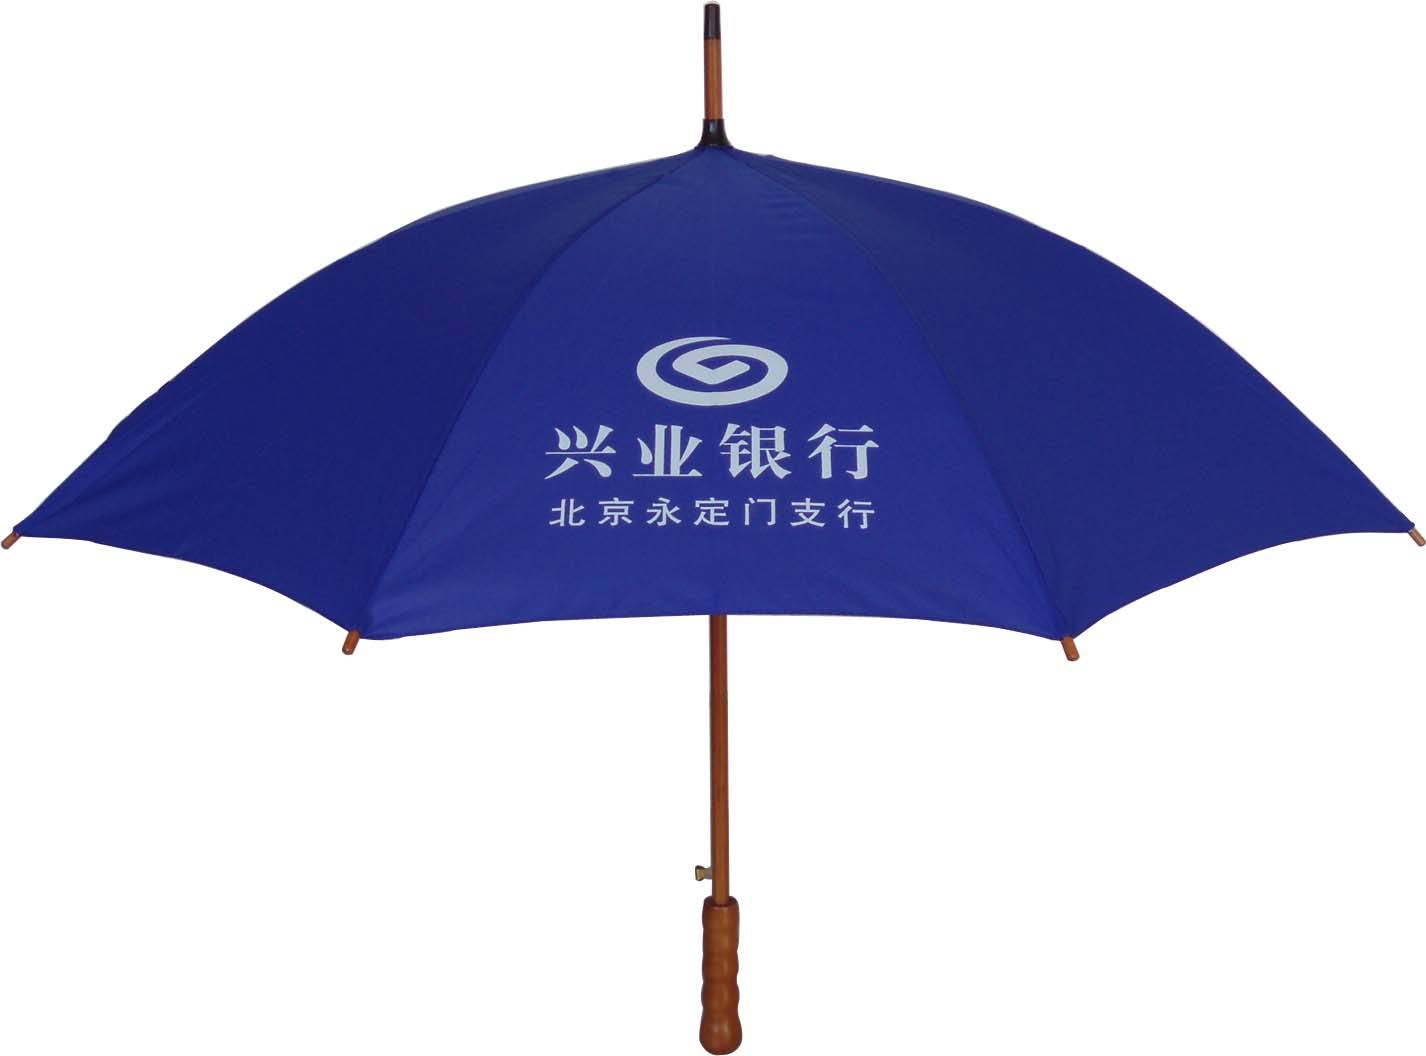 成都雨伞厂家 三折伞直杆伞批发定制 雨伞广告logo印刷